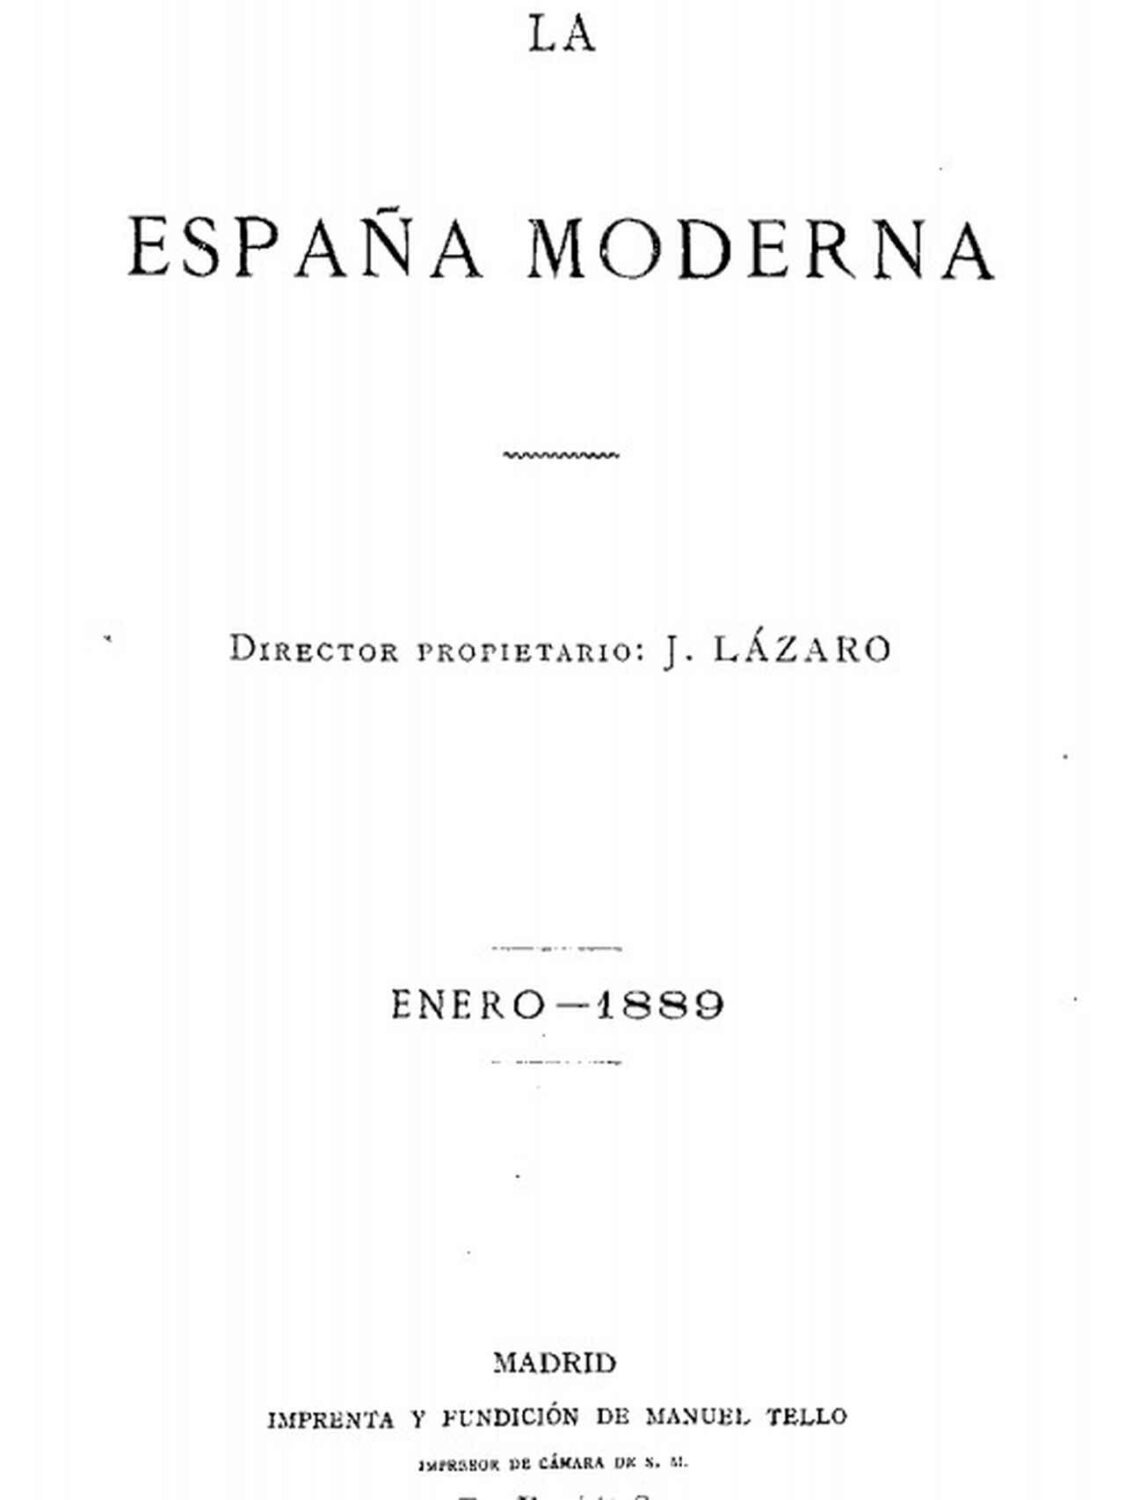 La España Moderna